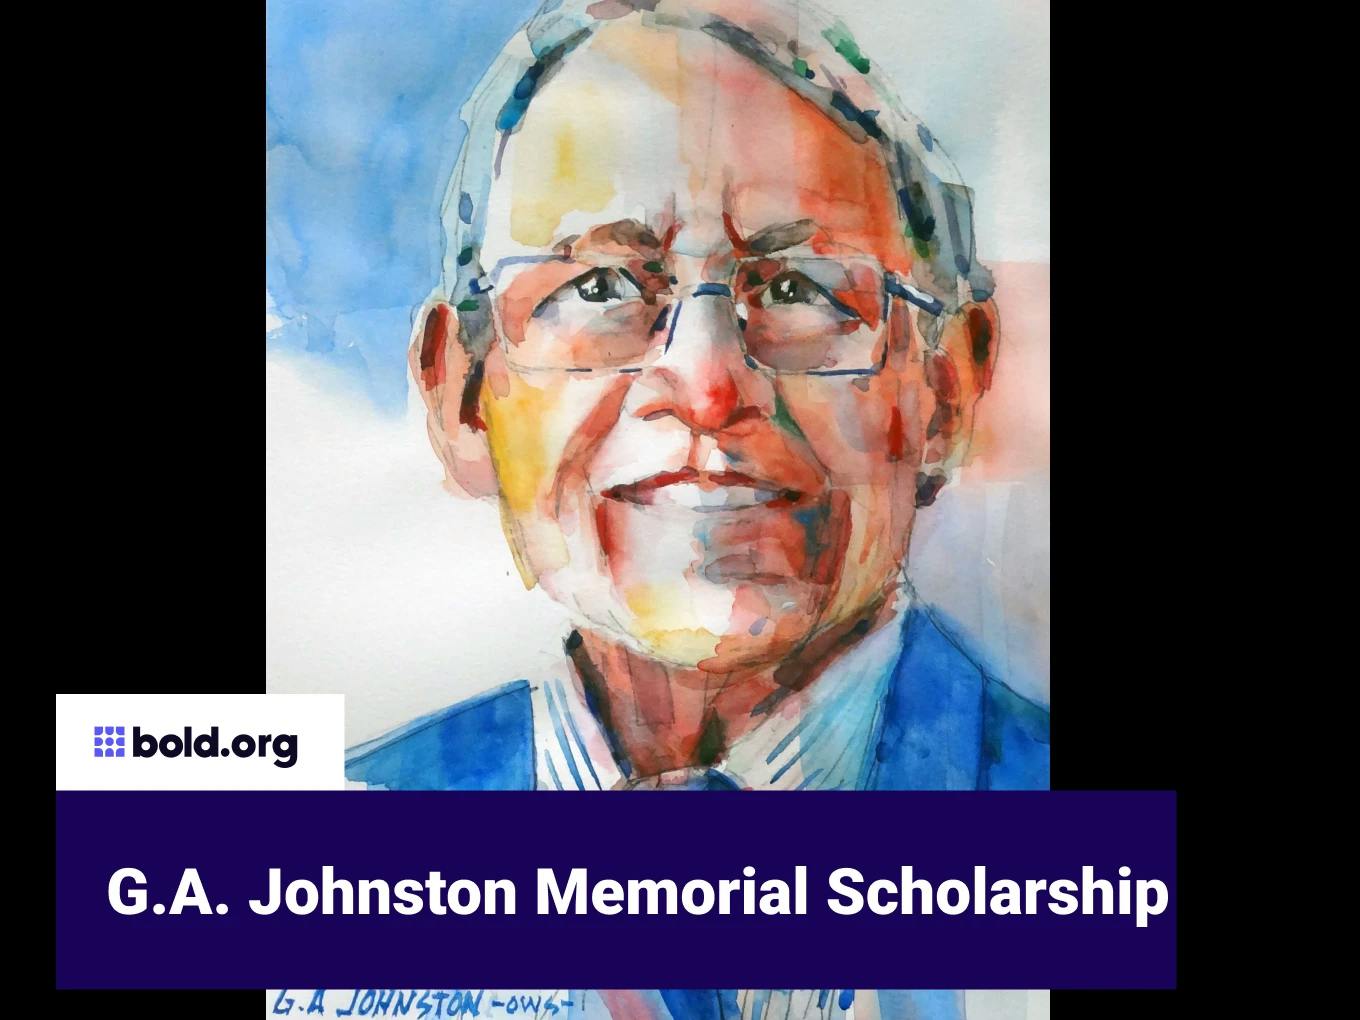 G.A. Johnston Memorial Scholarship